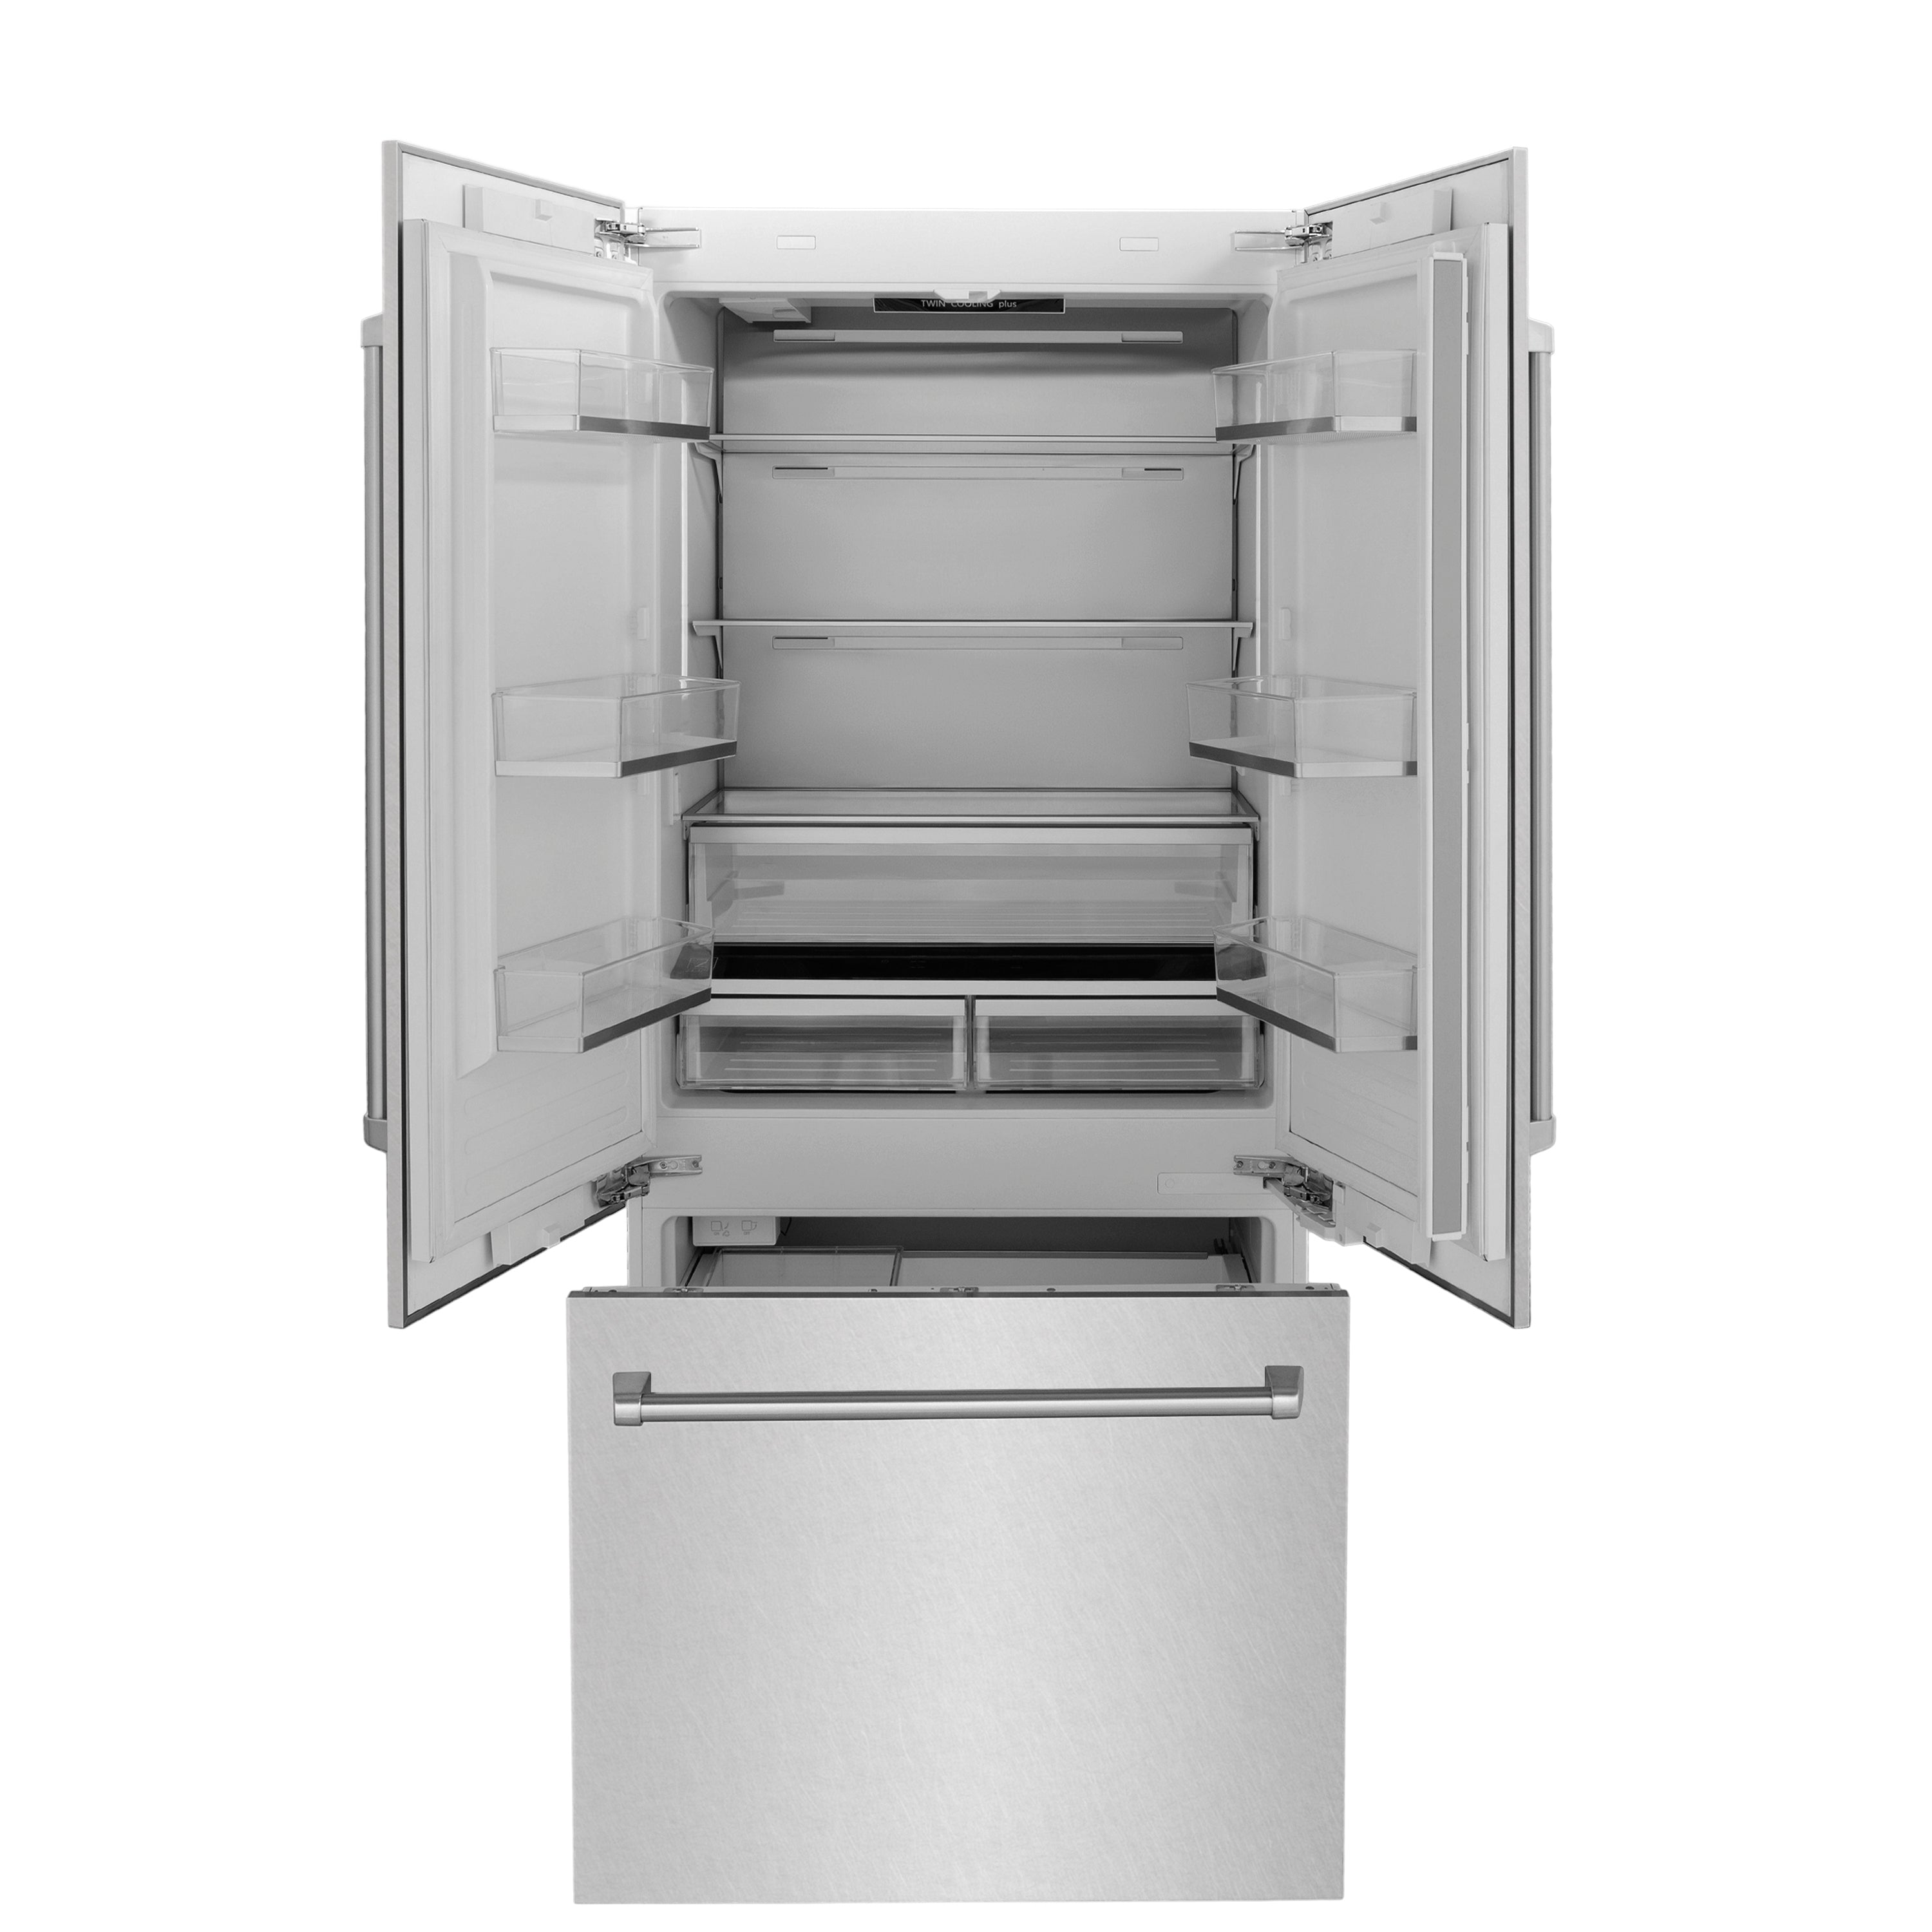 ZLINE 36" 19.6 cu. ft. Built-In 3-Door French Door Refrigerator with Internal Water and Ice Dispenser in Fingerprint Resistant Stainless Steel